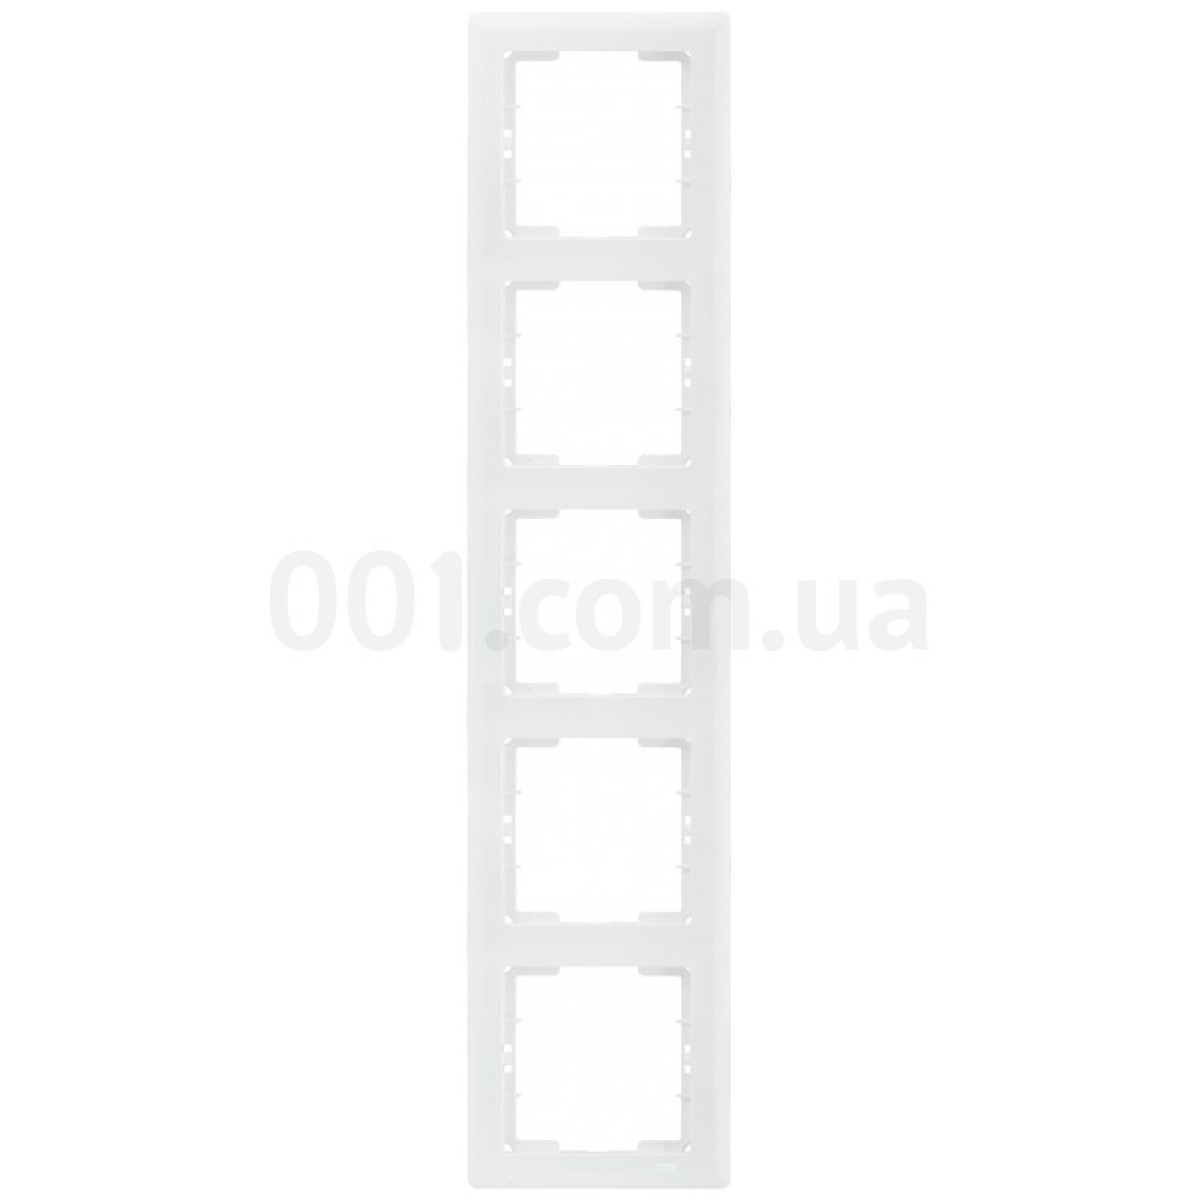 Рамка 5-постовая вертикальная белая РВ05-00-0-ББ серия BOLERO, IEK 256_256.jpg